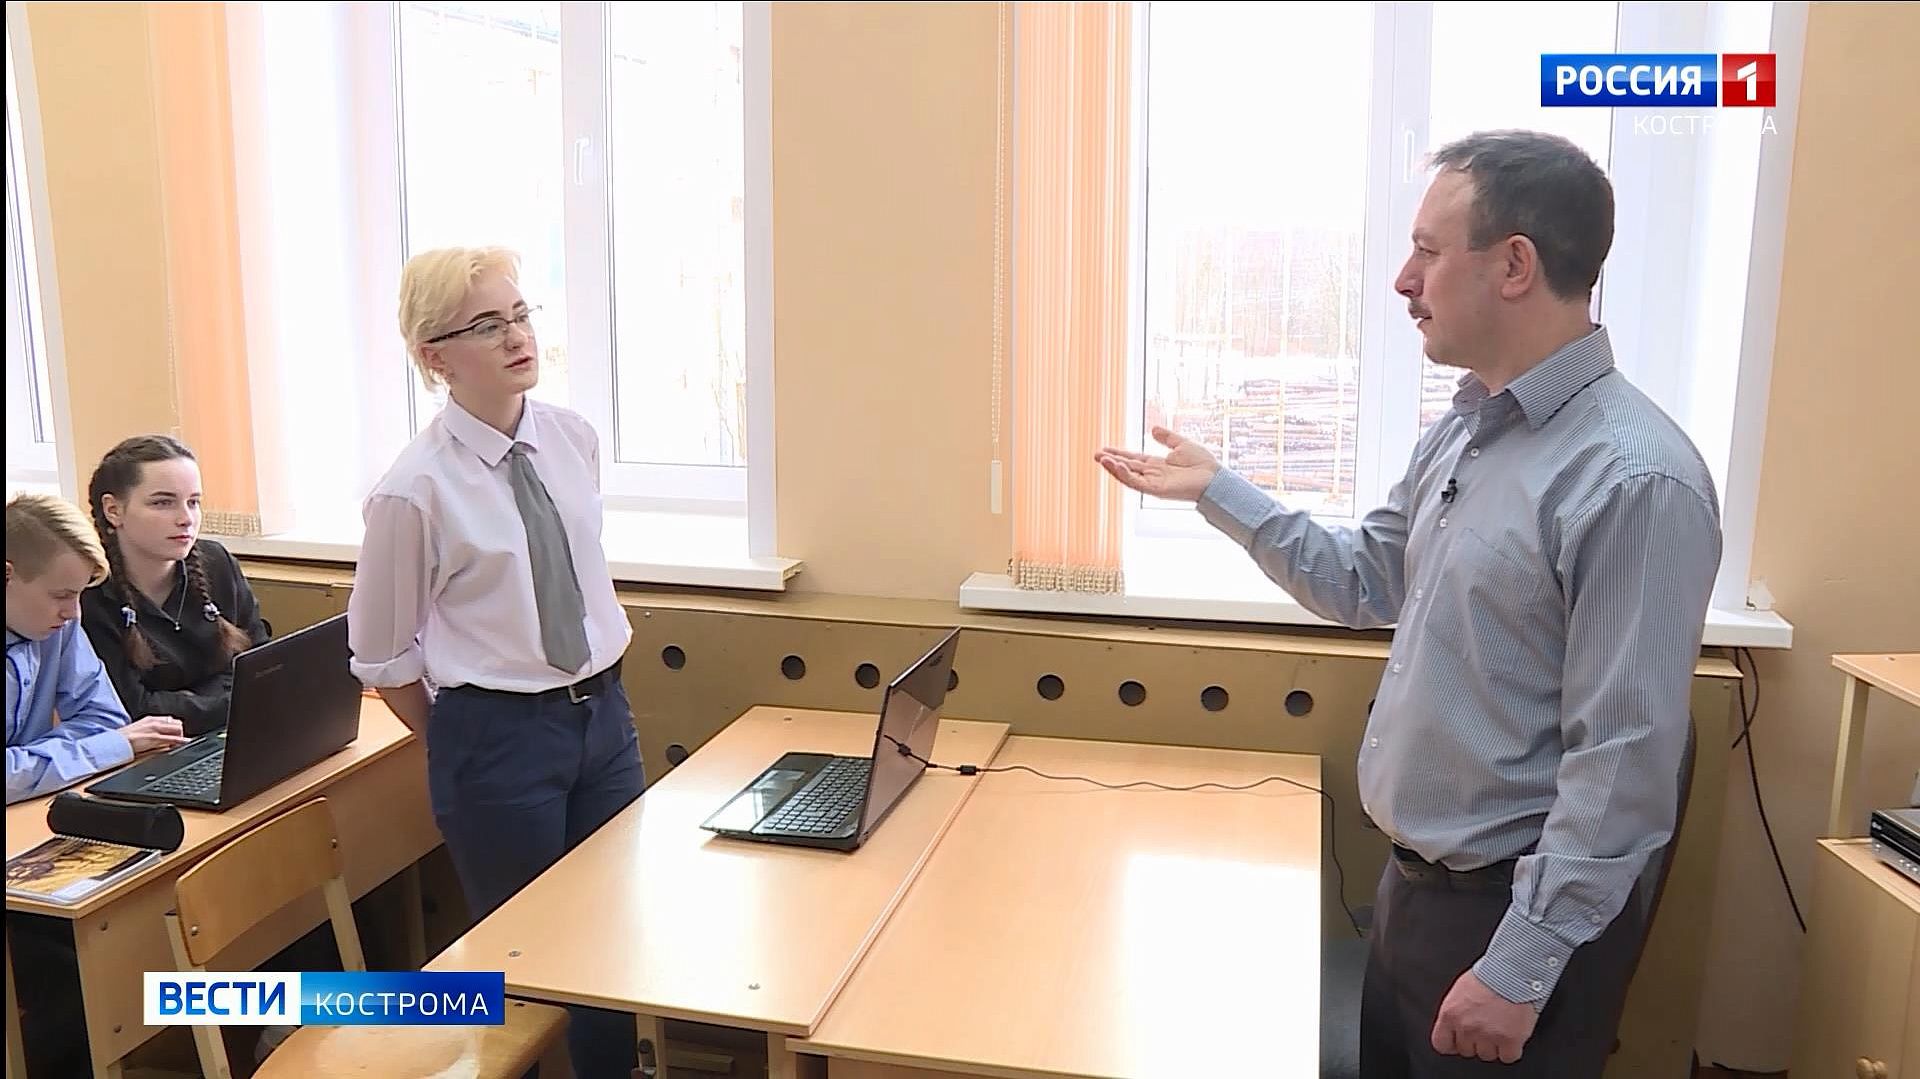 Астрономия, шашки, ОБЖ: директор школы под Костромой учит детей всему